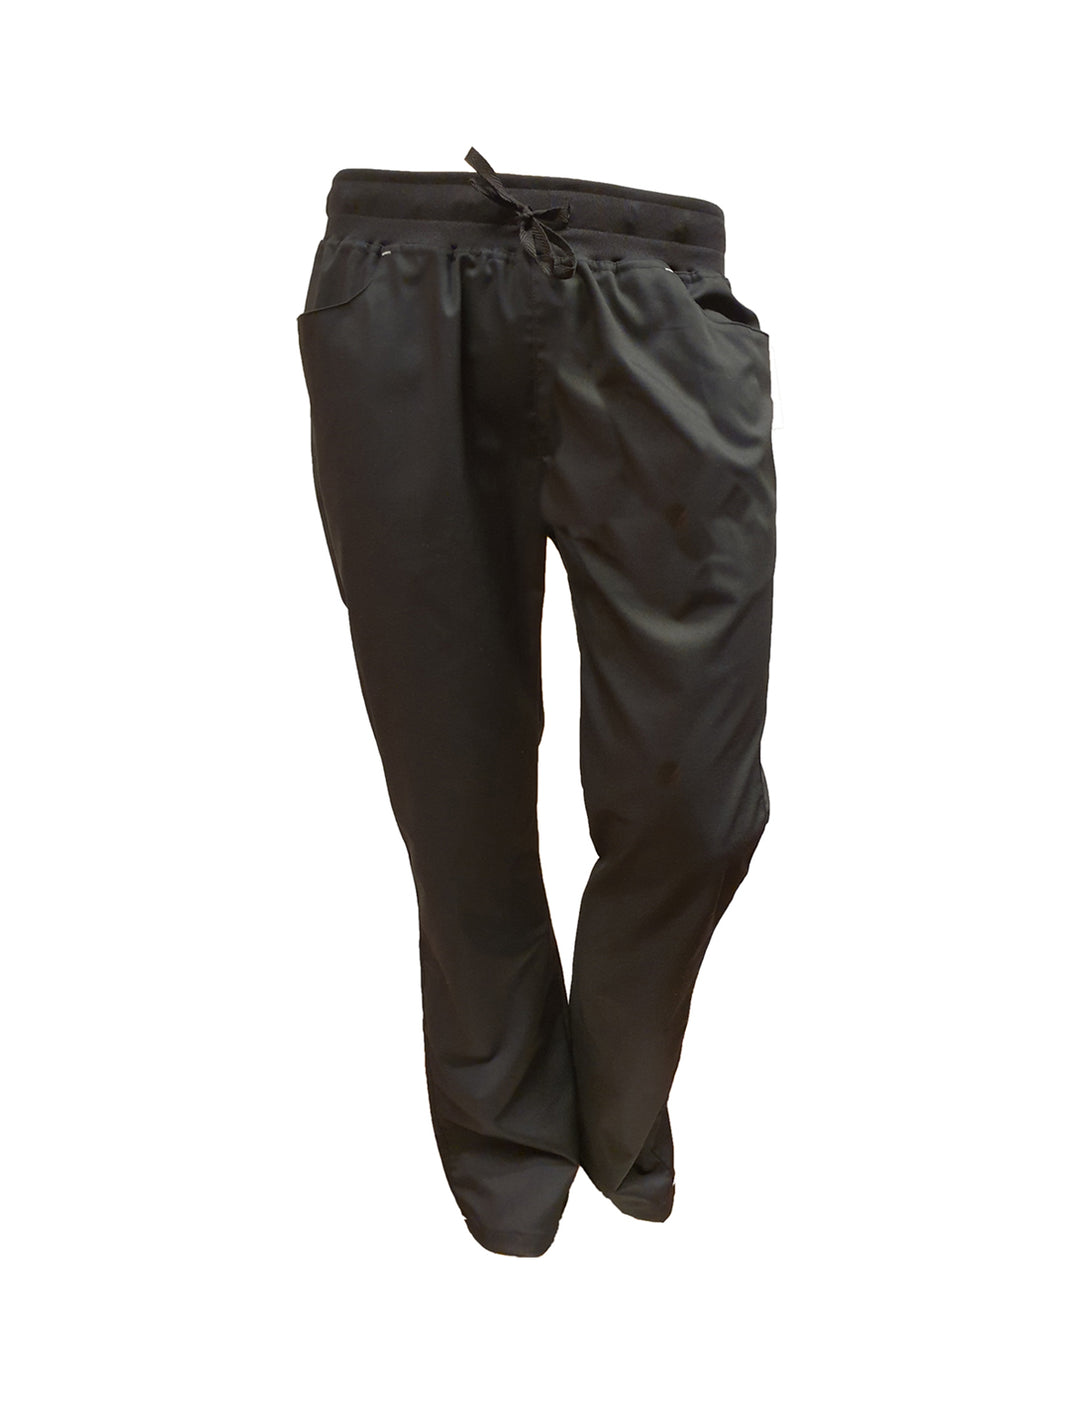 Monikäyttöiset mustat housut esimerkiksi terveydenhuoltoon ja hoitotyöhön. Viisi taskua, joista kaksi edessä ja kaksi takana. Nyörikiinnitys.